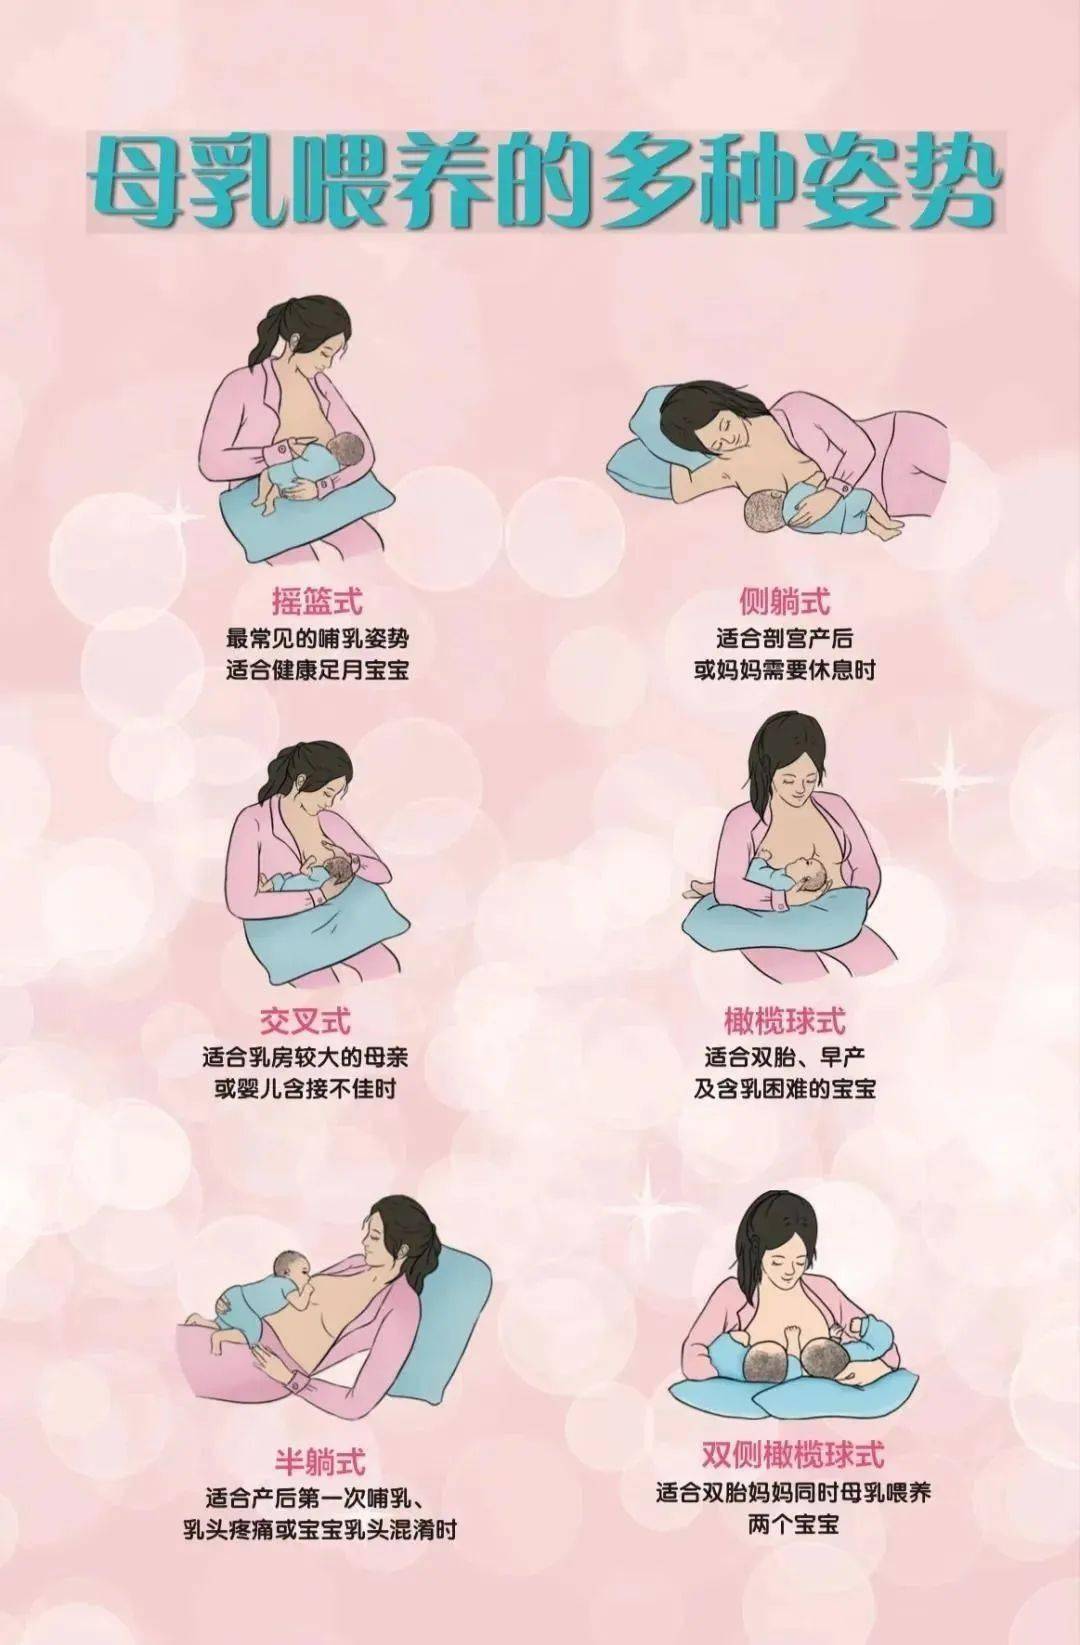 疼痛或宝宝乳头混淆时侧躺式:适合剖宫产后或妈妈需要休息时橄榄球式